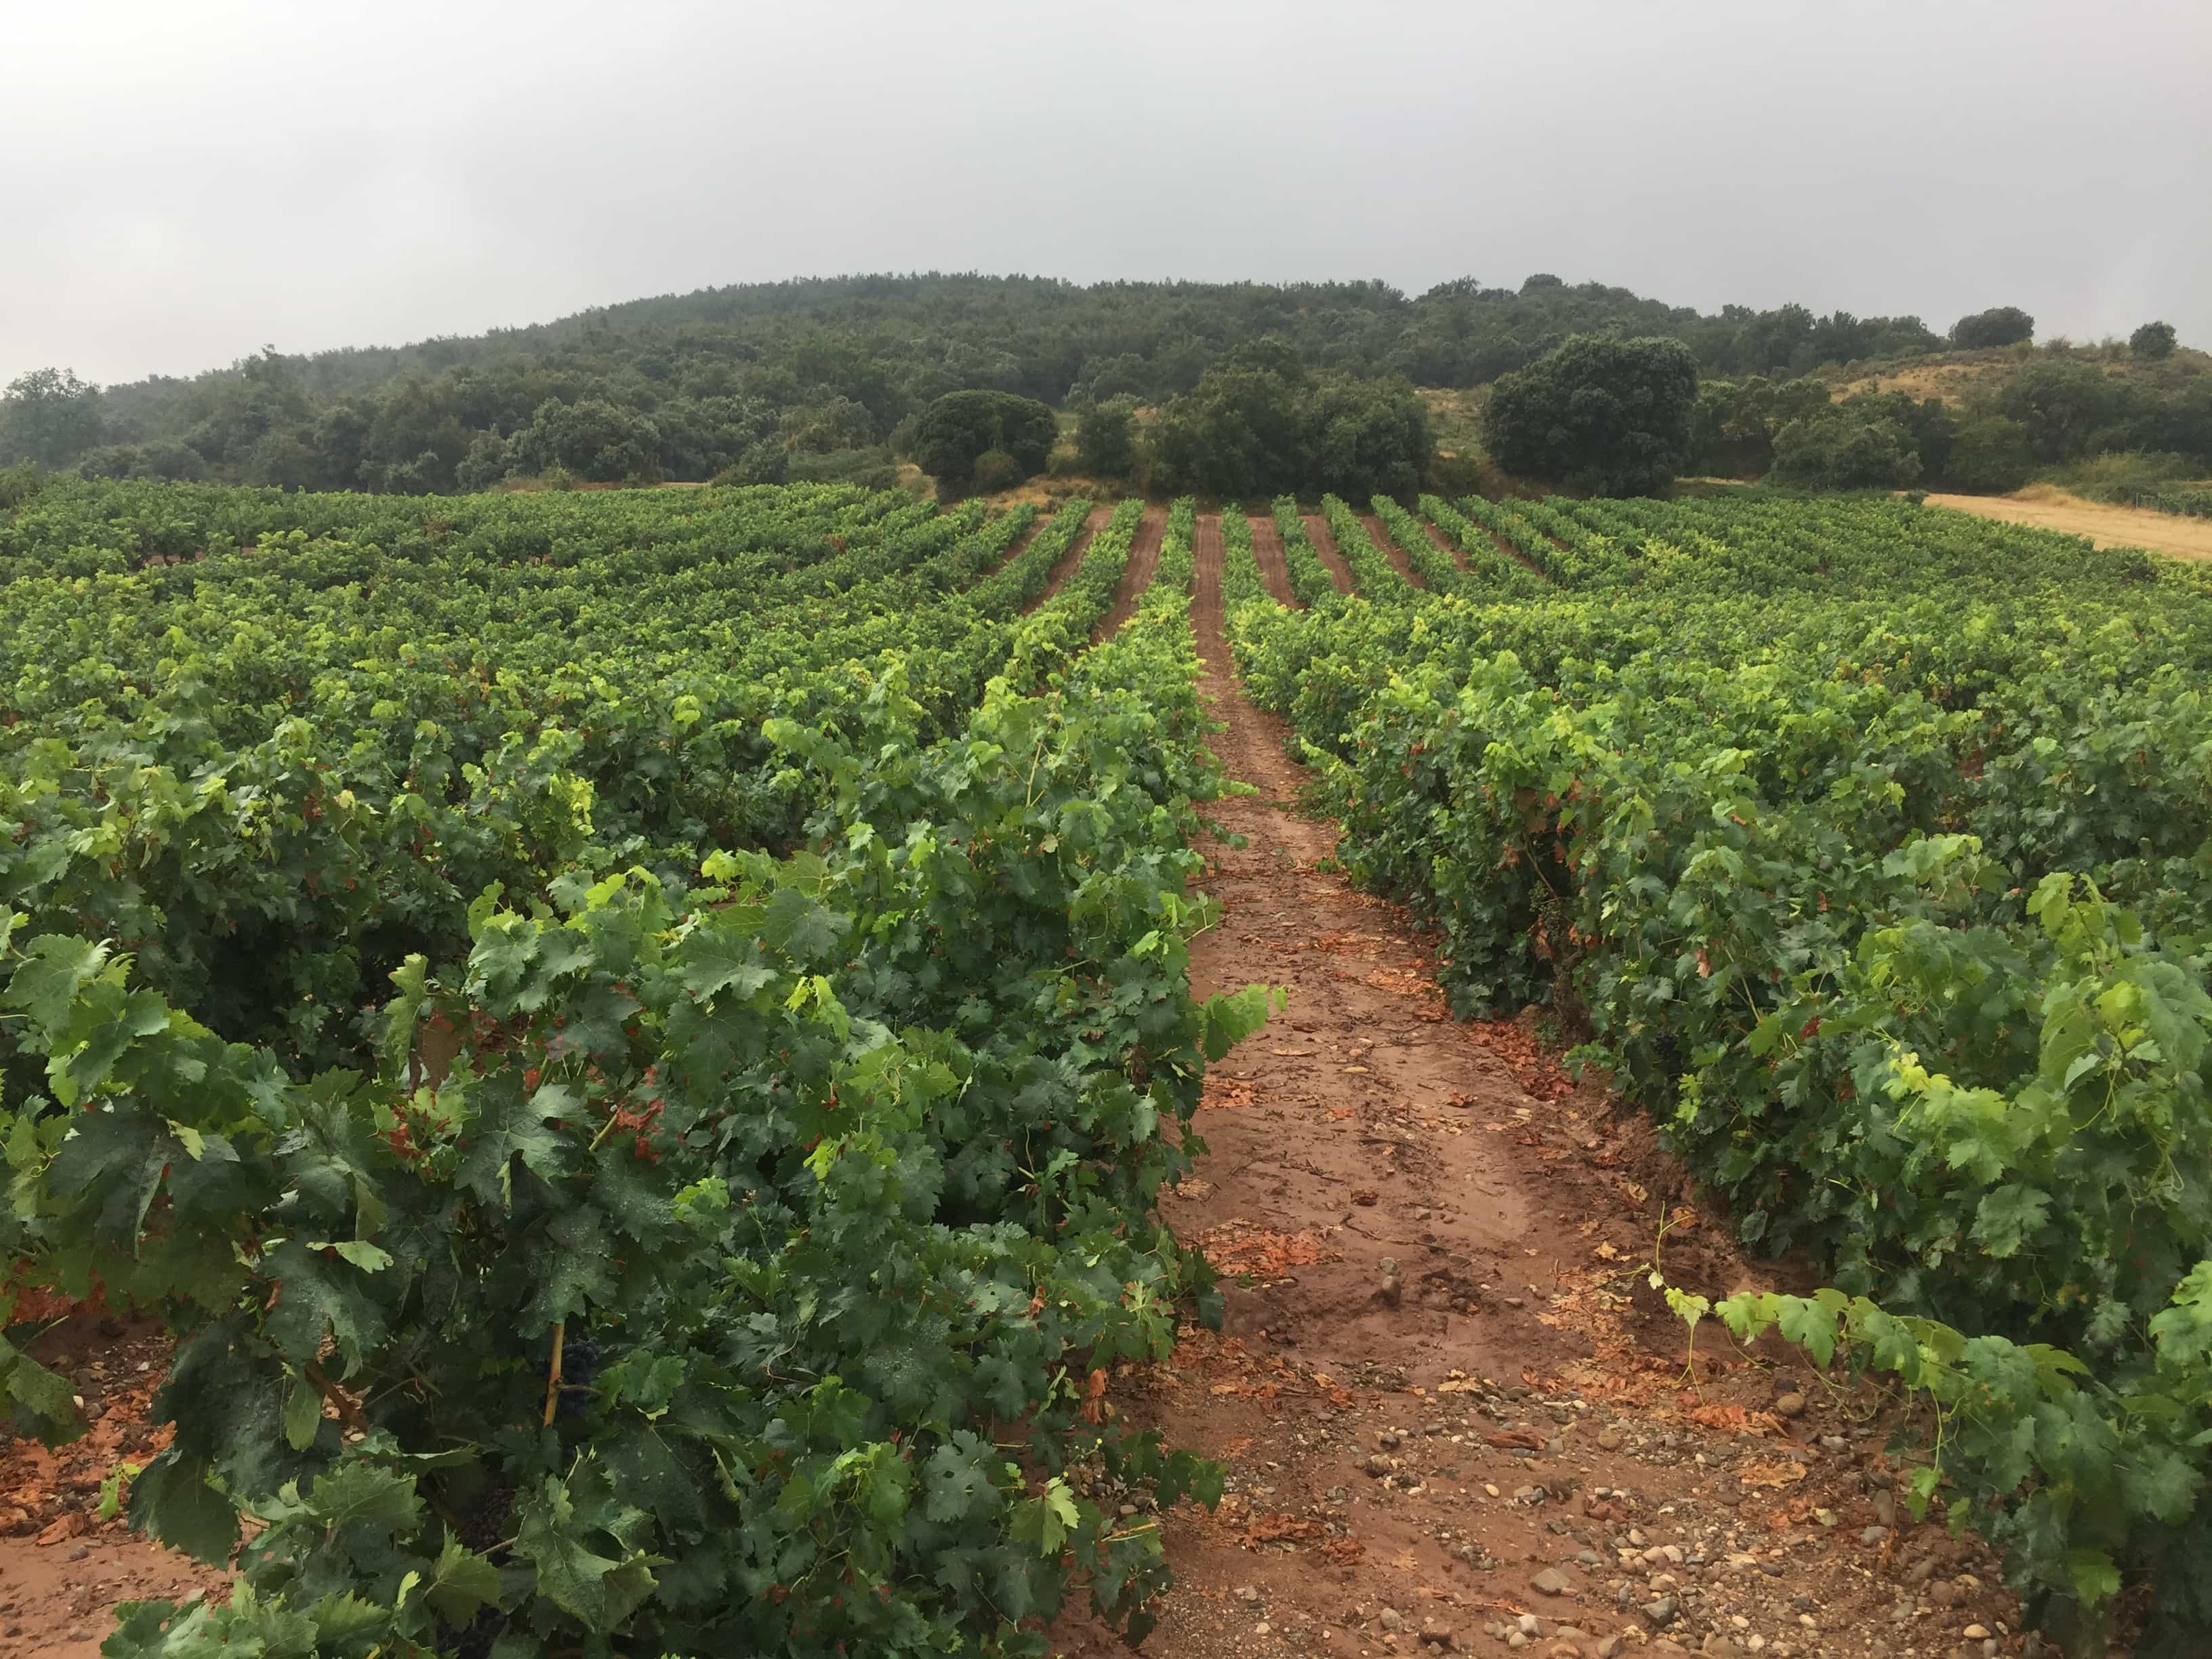 Refreshing rain in the vineyards